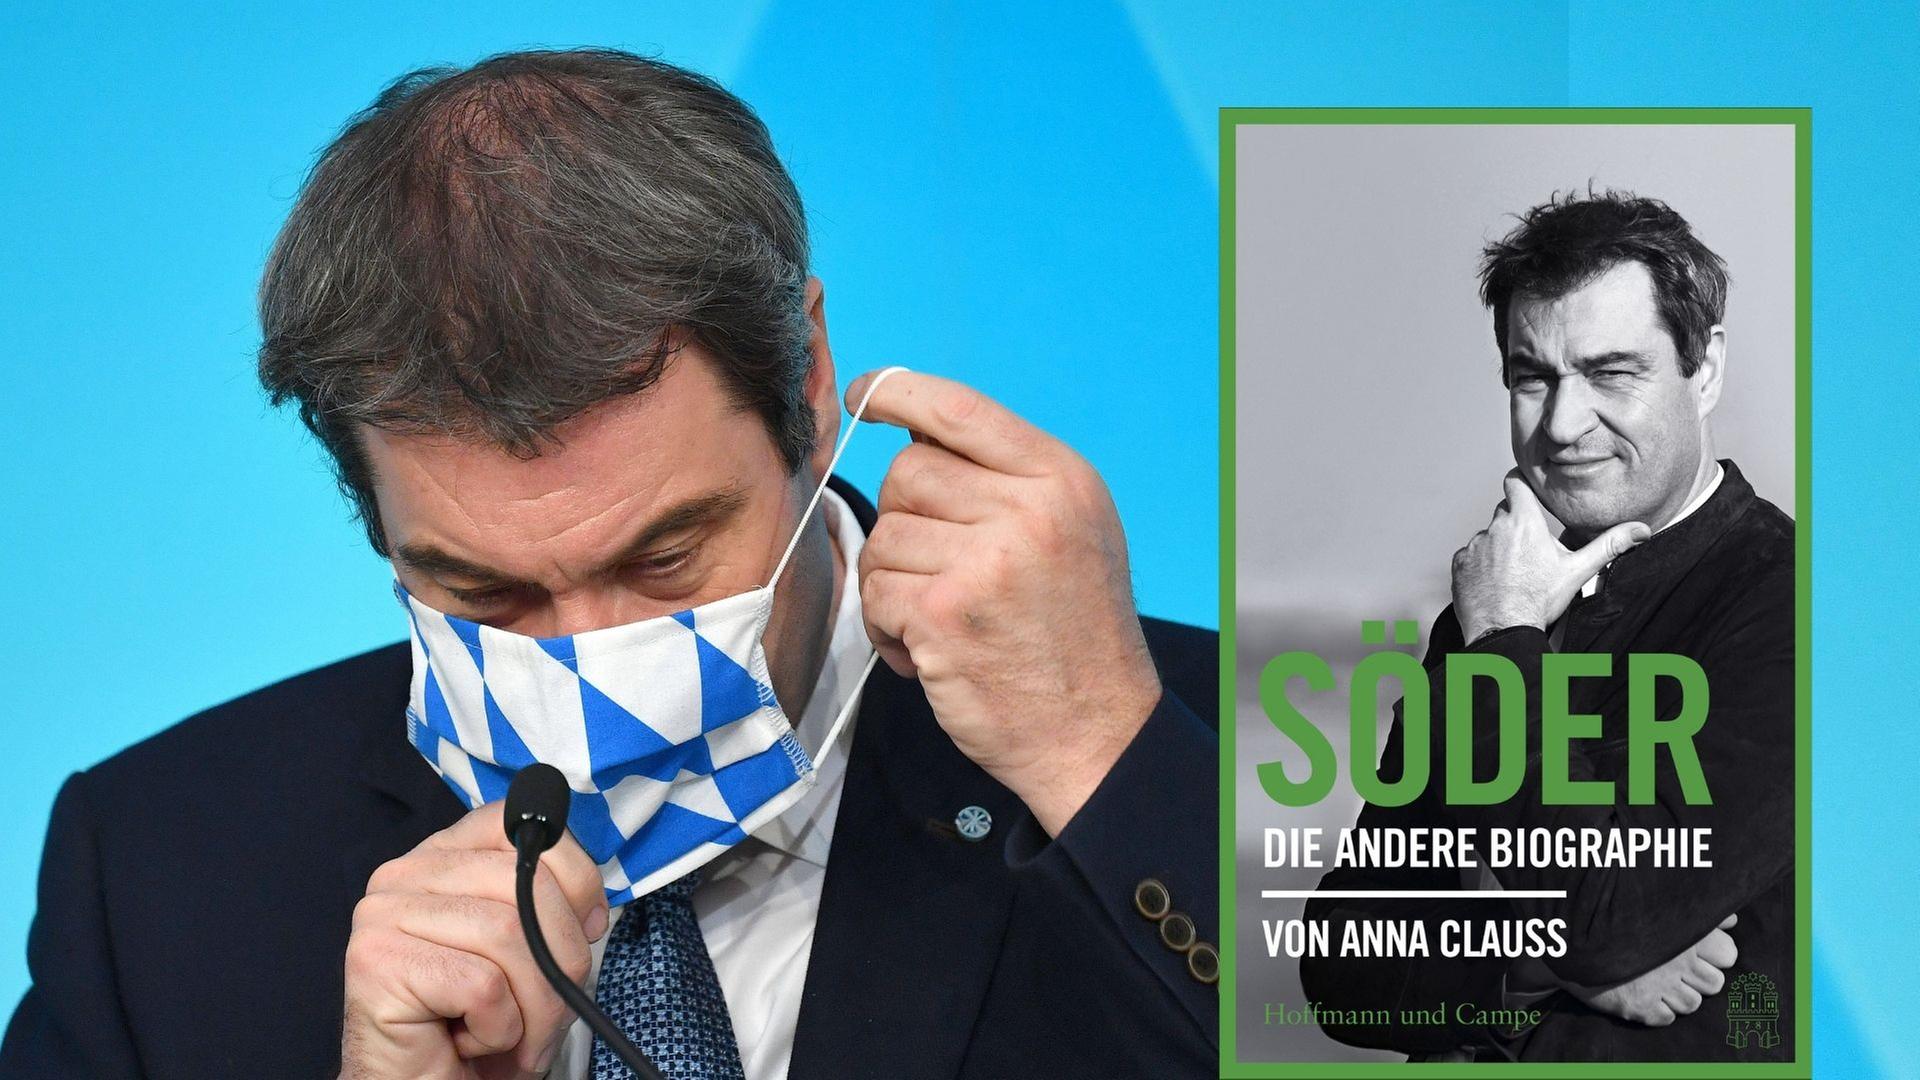 Der Bayrische Ministerpräsident Markus Söder und das Buch von Anna Clauß: "Söder. Die andere Biographie"